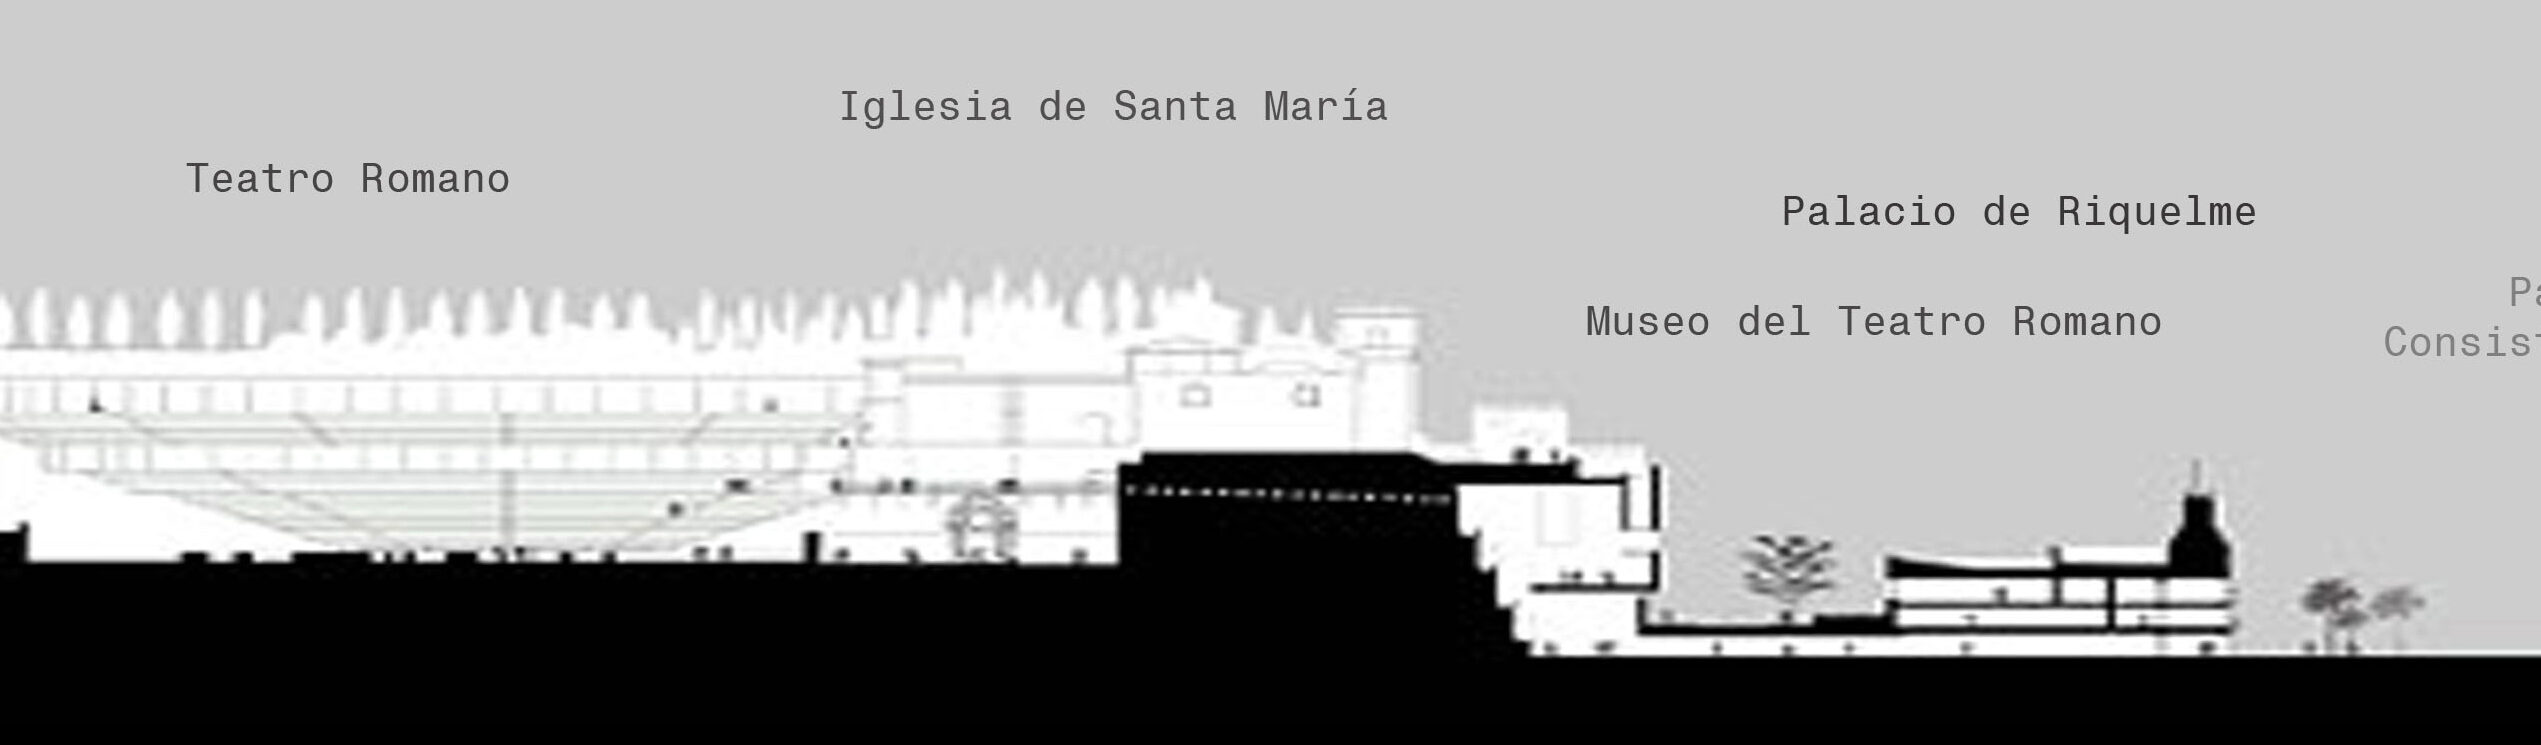 MUSEO TEATRO ROMANO DE CARTAGENA		Cartagena	Murcia	Museo